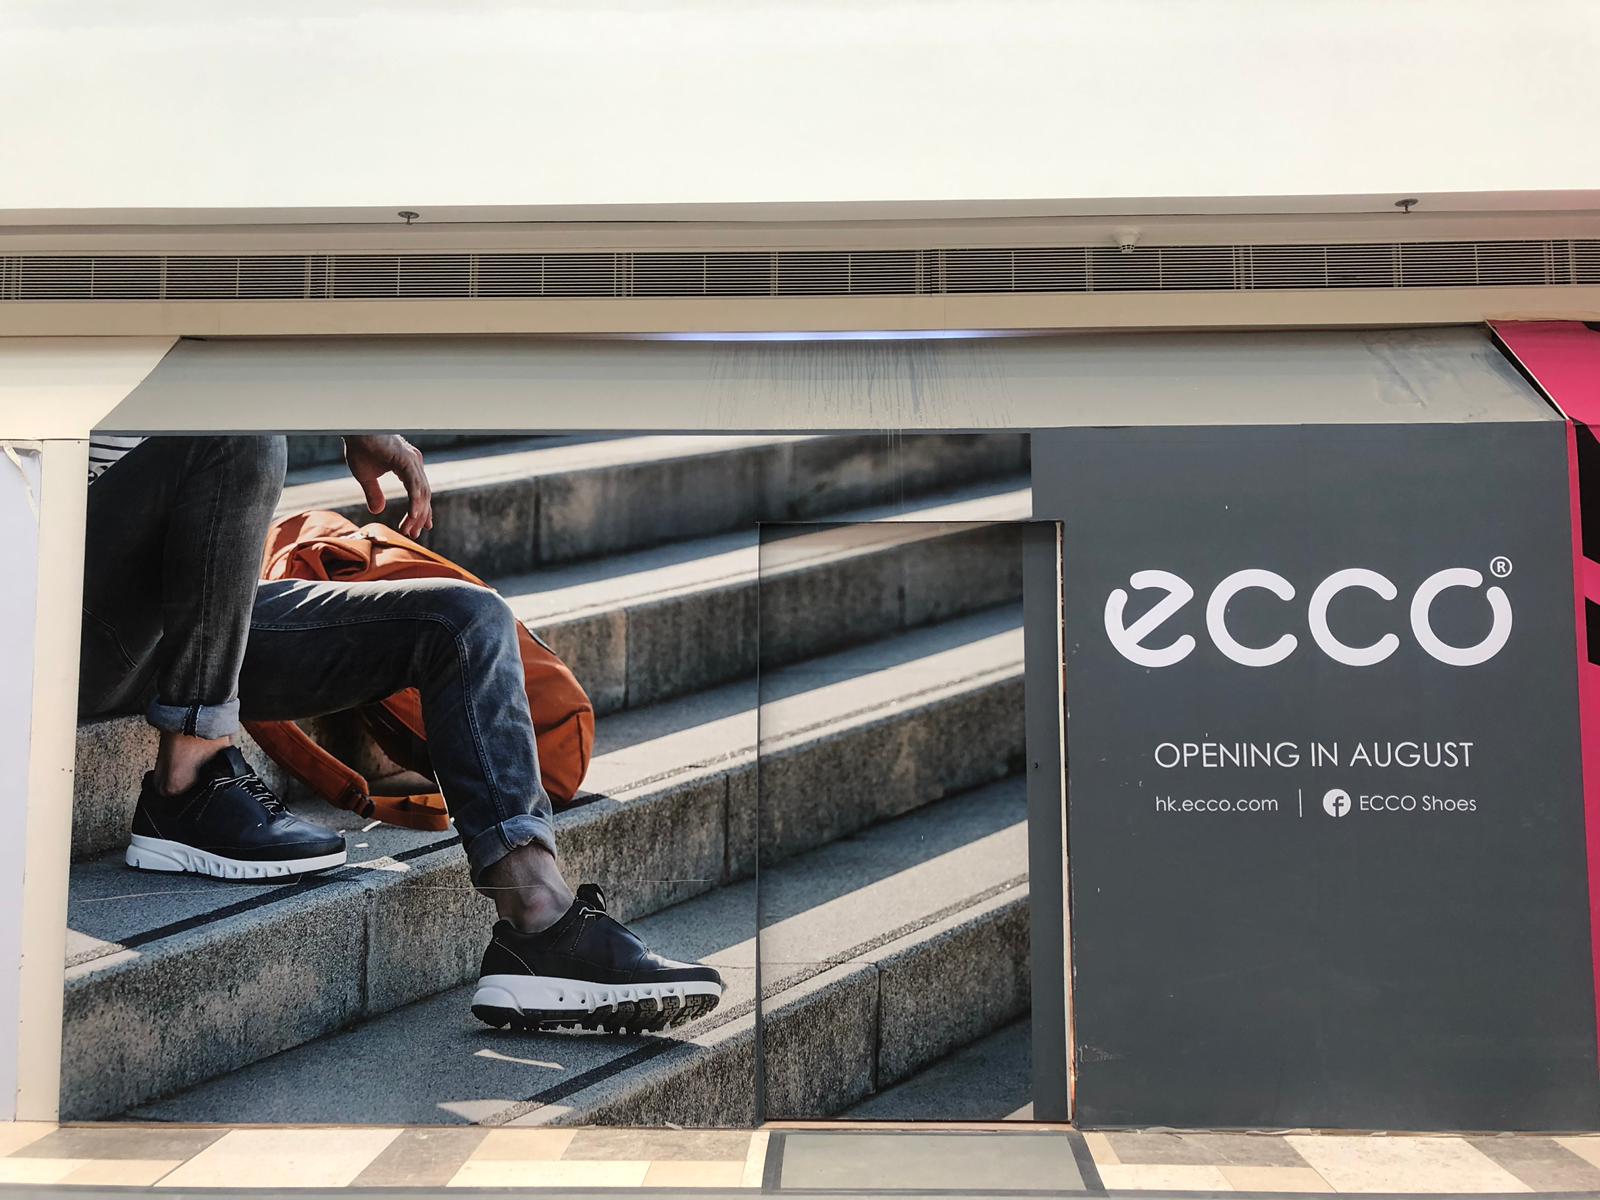 【競猜ECCO 全新專門店，贏取ECCO旅行頸枕!!】 ECCO 全新專門店將於2019年8月10日開幕啦，大家知唔知會進駐邊個商場呢? 只要係留言欄競猜商場名稱，答案正確且最快回覆既100位Fans 可獲贈ECCO 旅行頸枕乙個(價值:$149)! 題目：ECCO 將於2019年8月10日起進駐邊個商場設立ECCO 專門店? (提示:商場位於港島區著名旅遊景點，位置可飽覽香港景色) ... ➡️玩法好簡單：